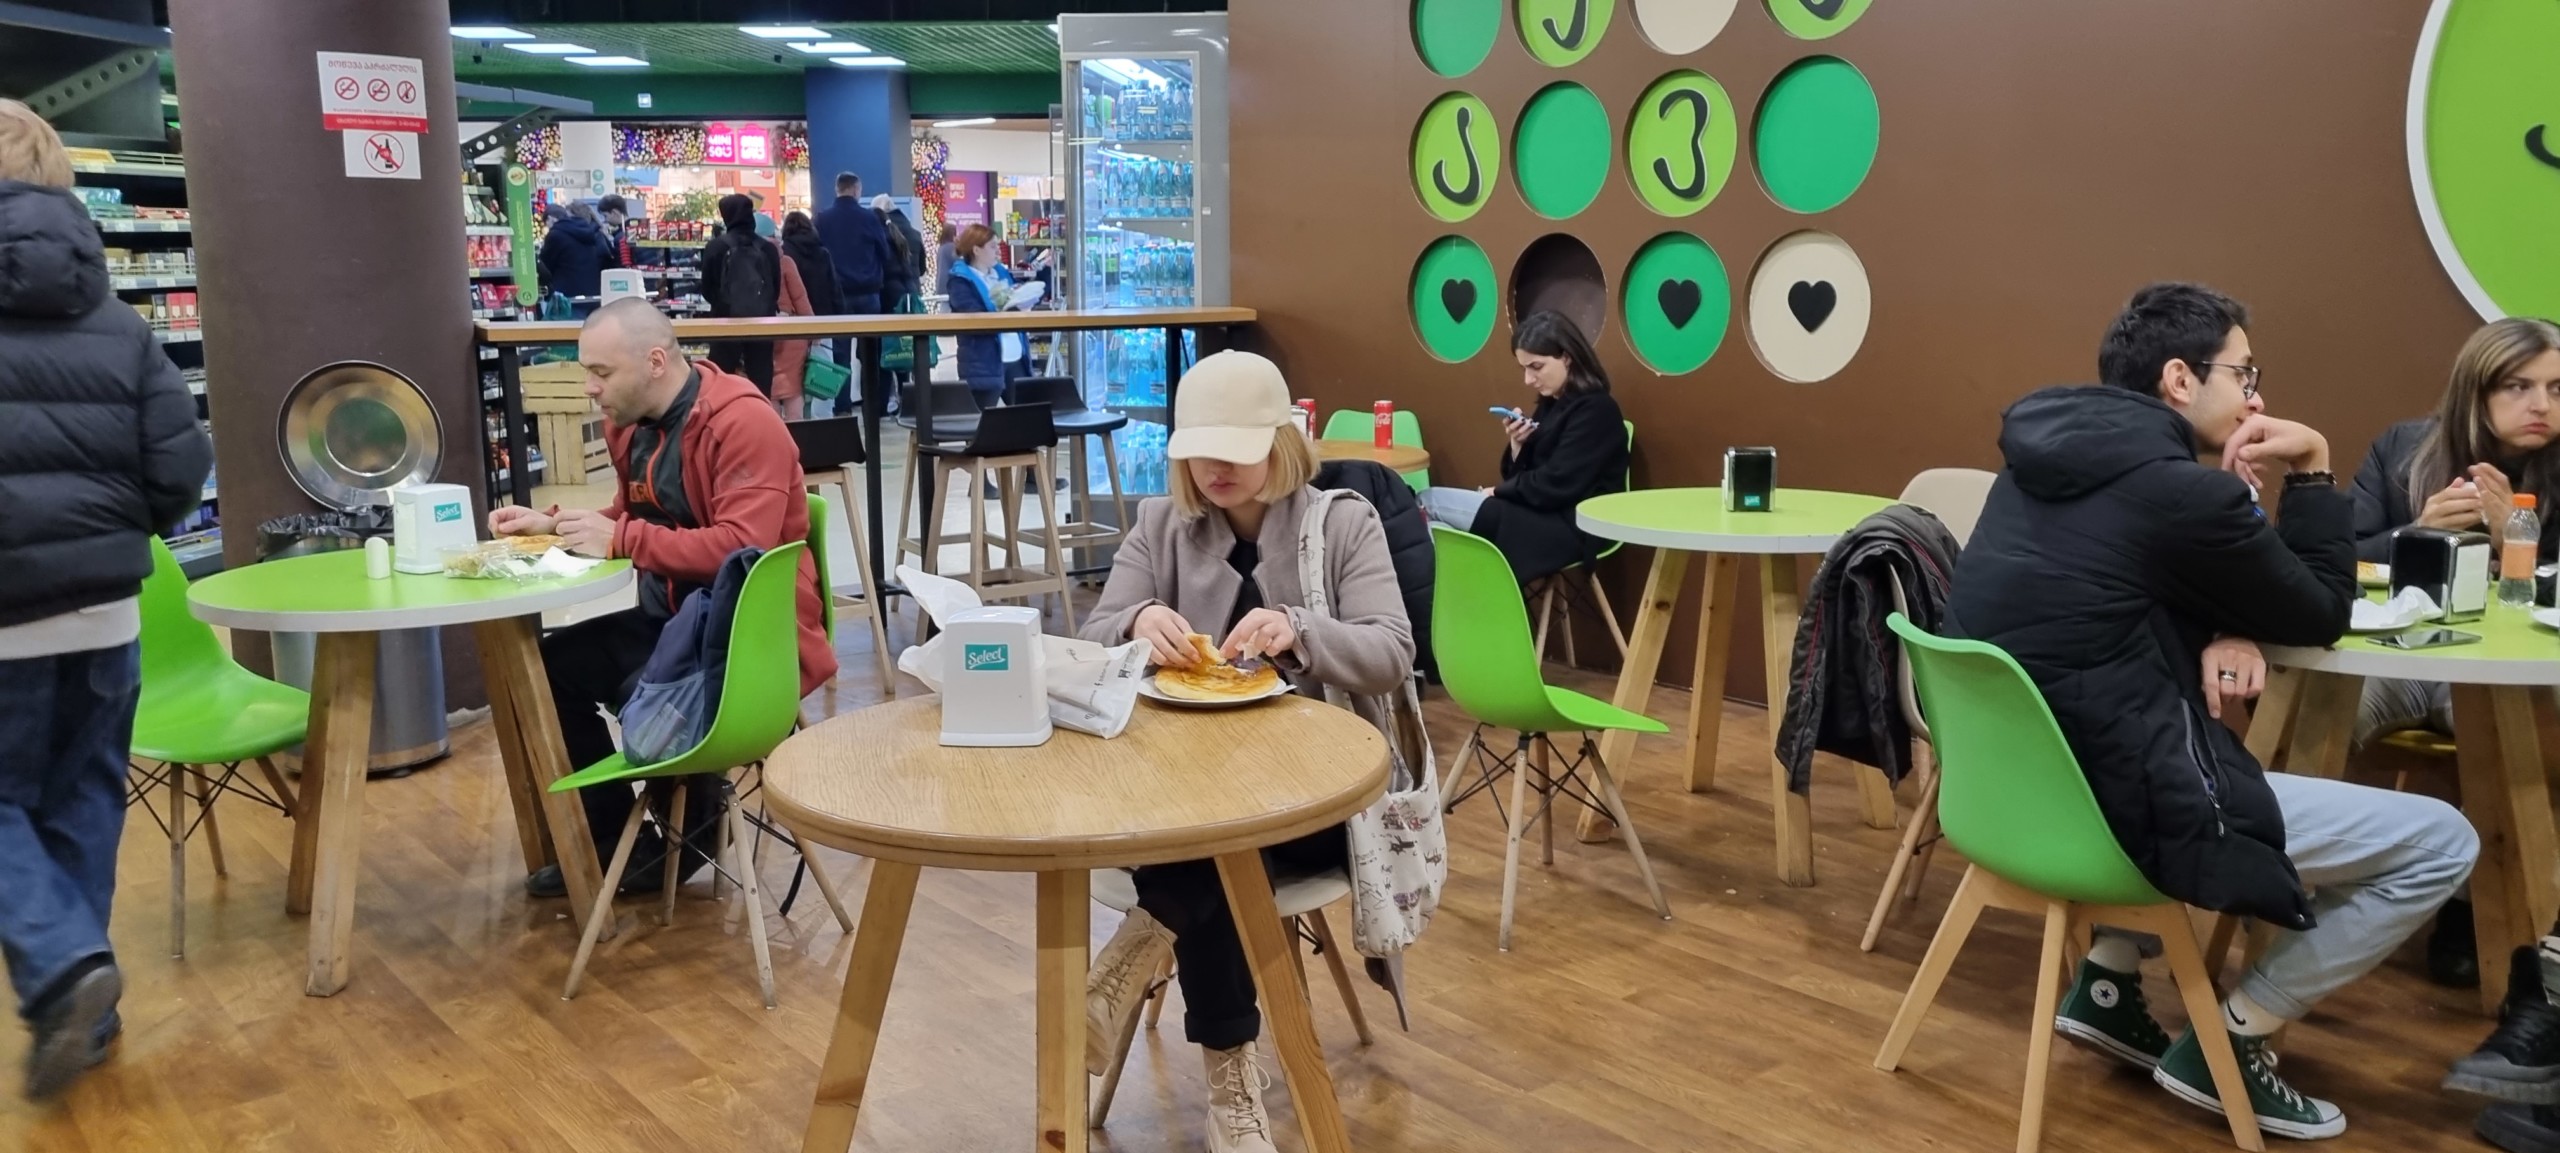 Кафетерий в супермаркете – значимое конкурентное преимущество. «Goodwill» в торговом центре «Galleria», Грузия